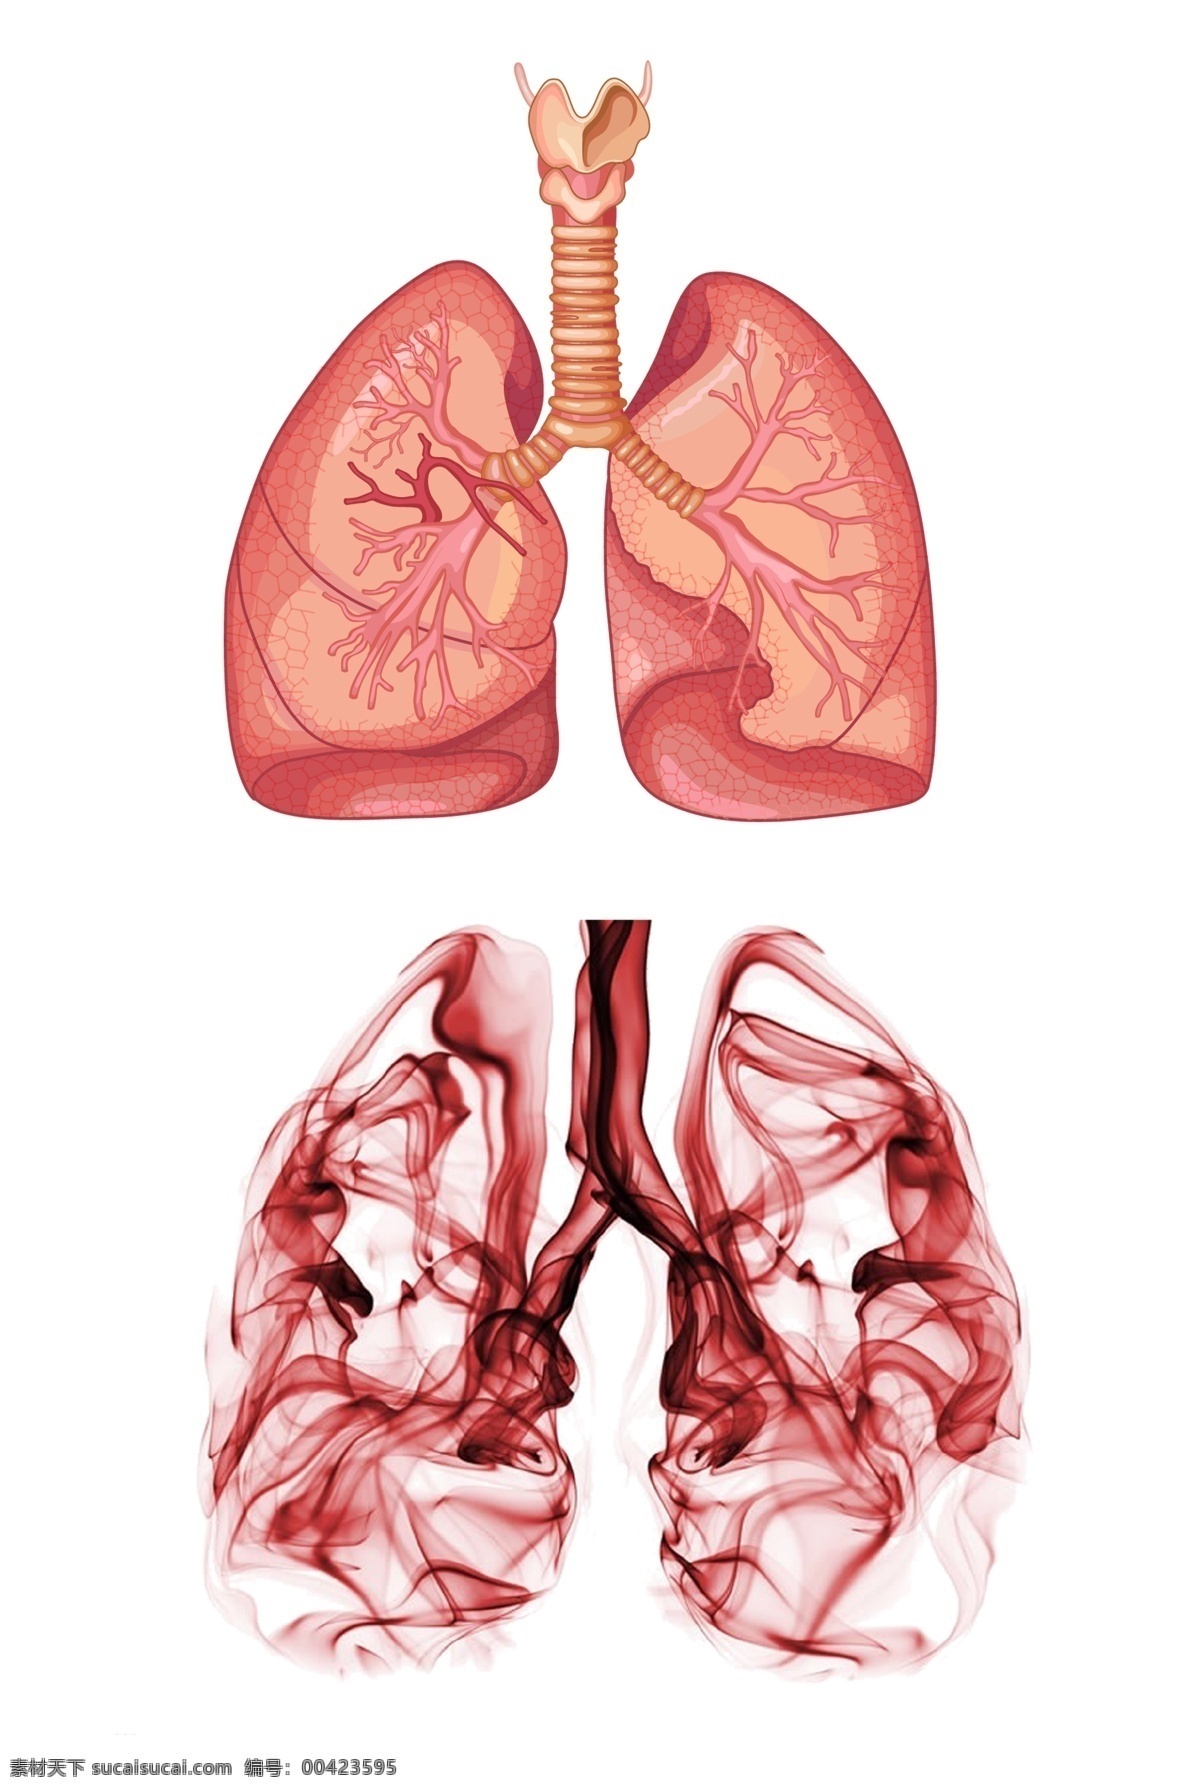 肺部器官图 人体器官 创意肺部 肺部 器官 心肺 创意肺部插画 创意设计 插画 健康 肺